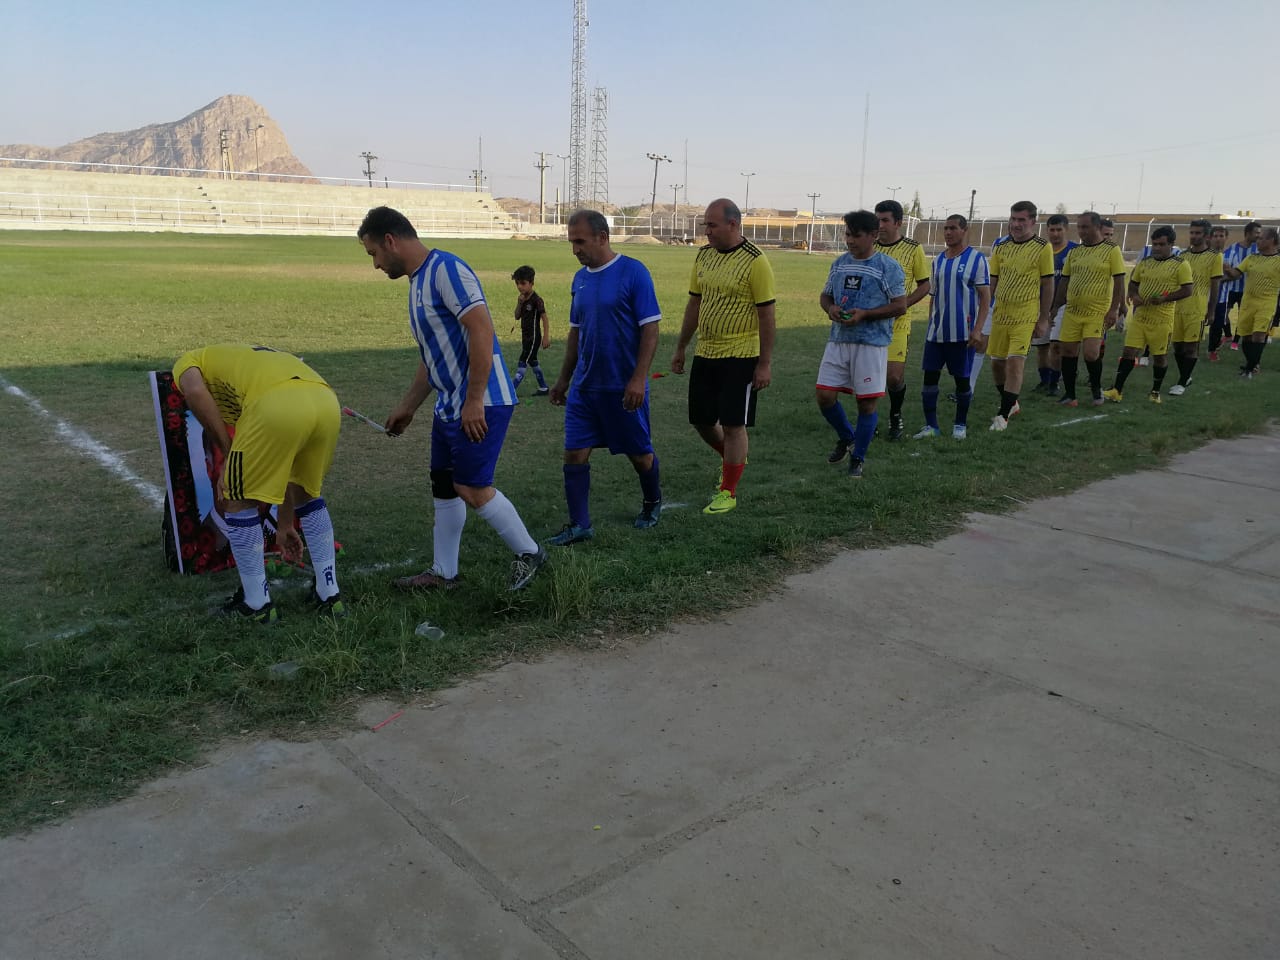 برگزاری بازی فوتبال به یاد استاد اخلاق “قادر لاهوتی”/تصاویر